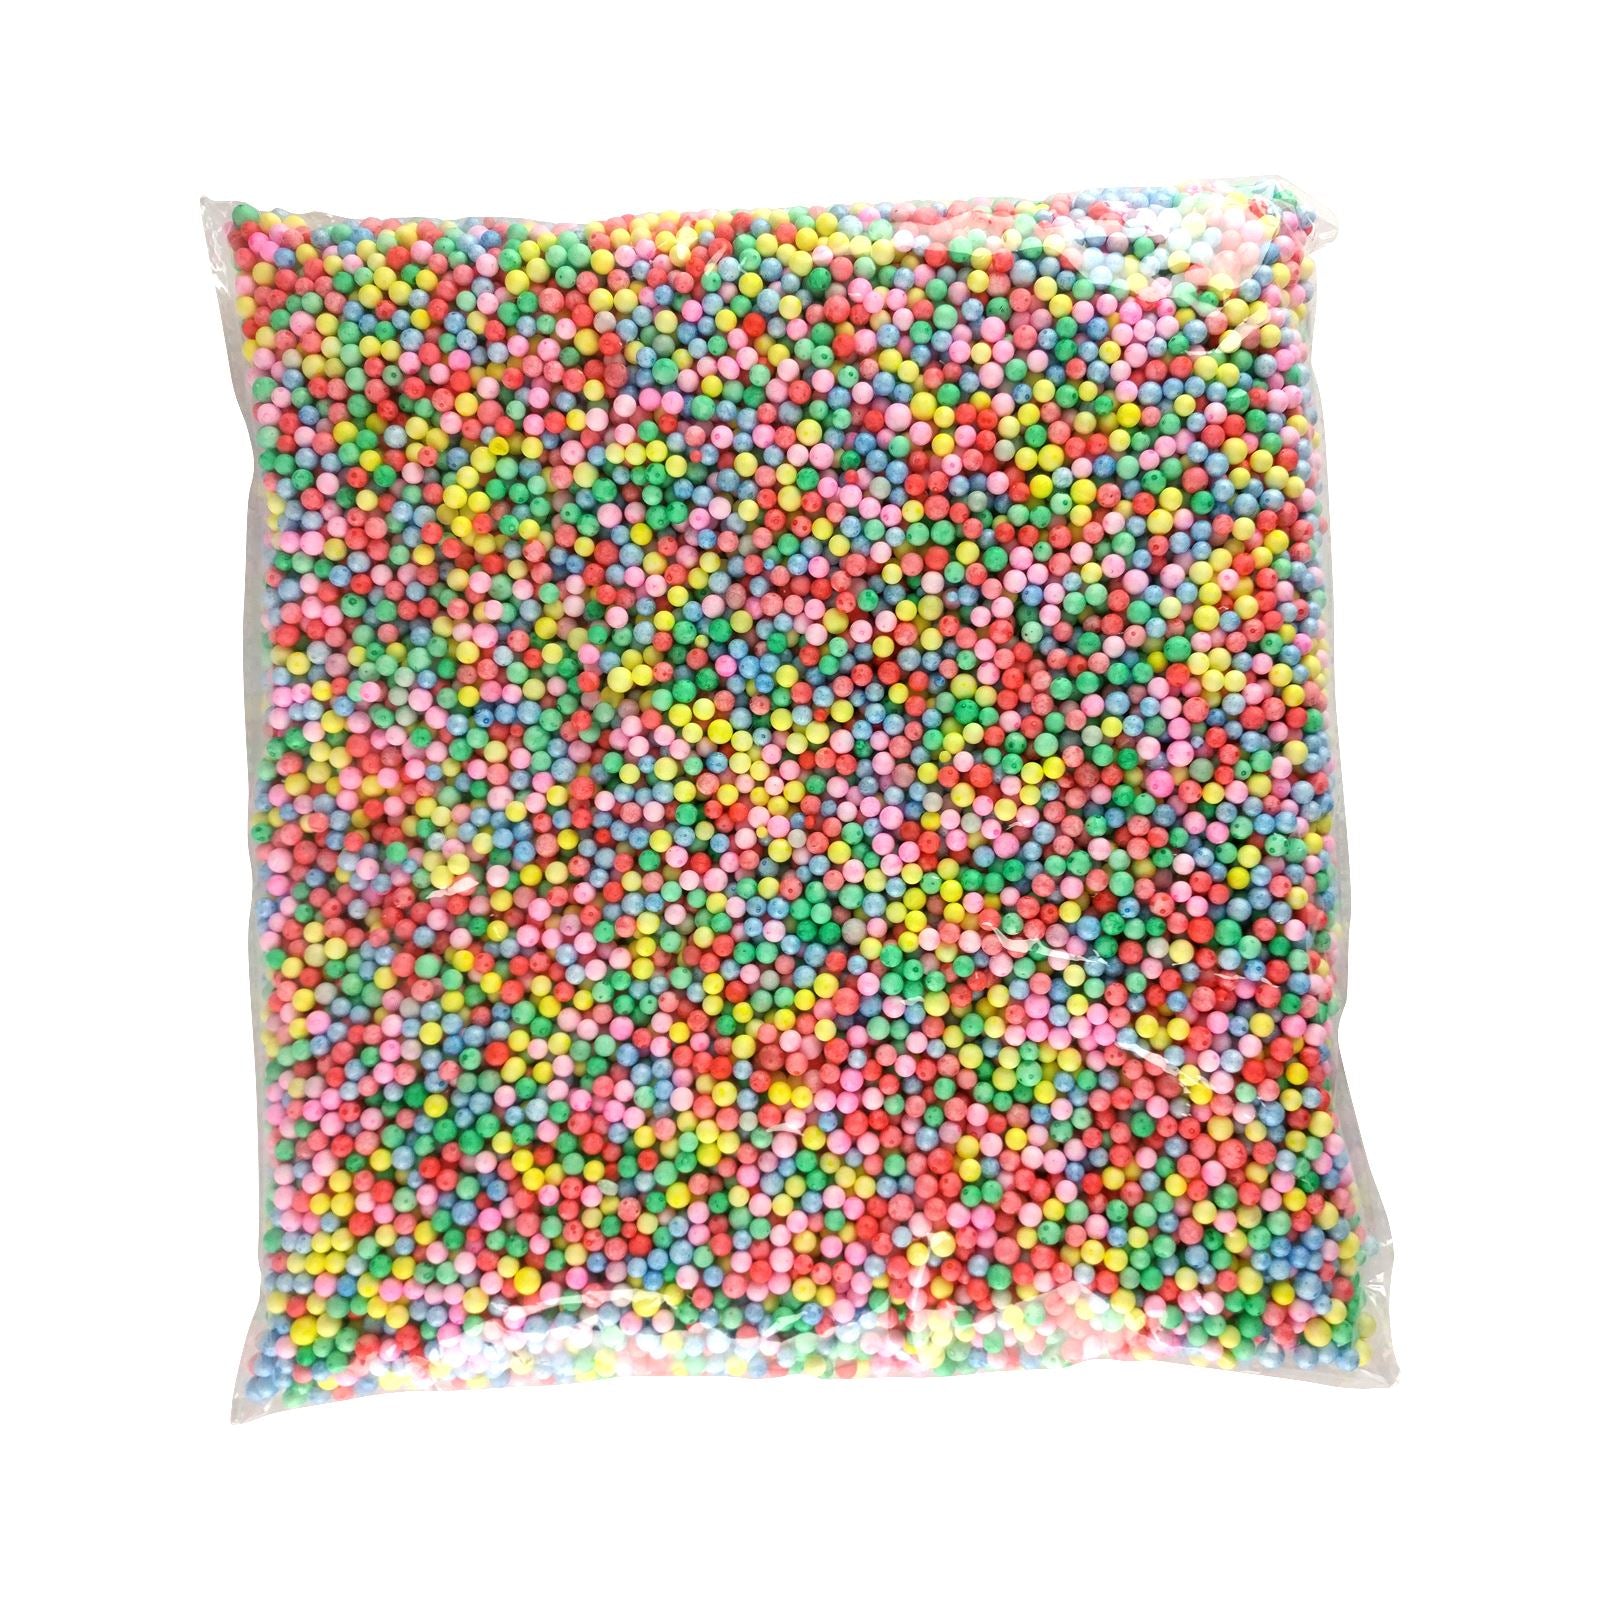 50g of Mini Multicolour Polystyrene Balls (2.5 Litres)